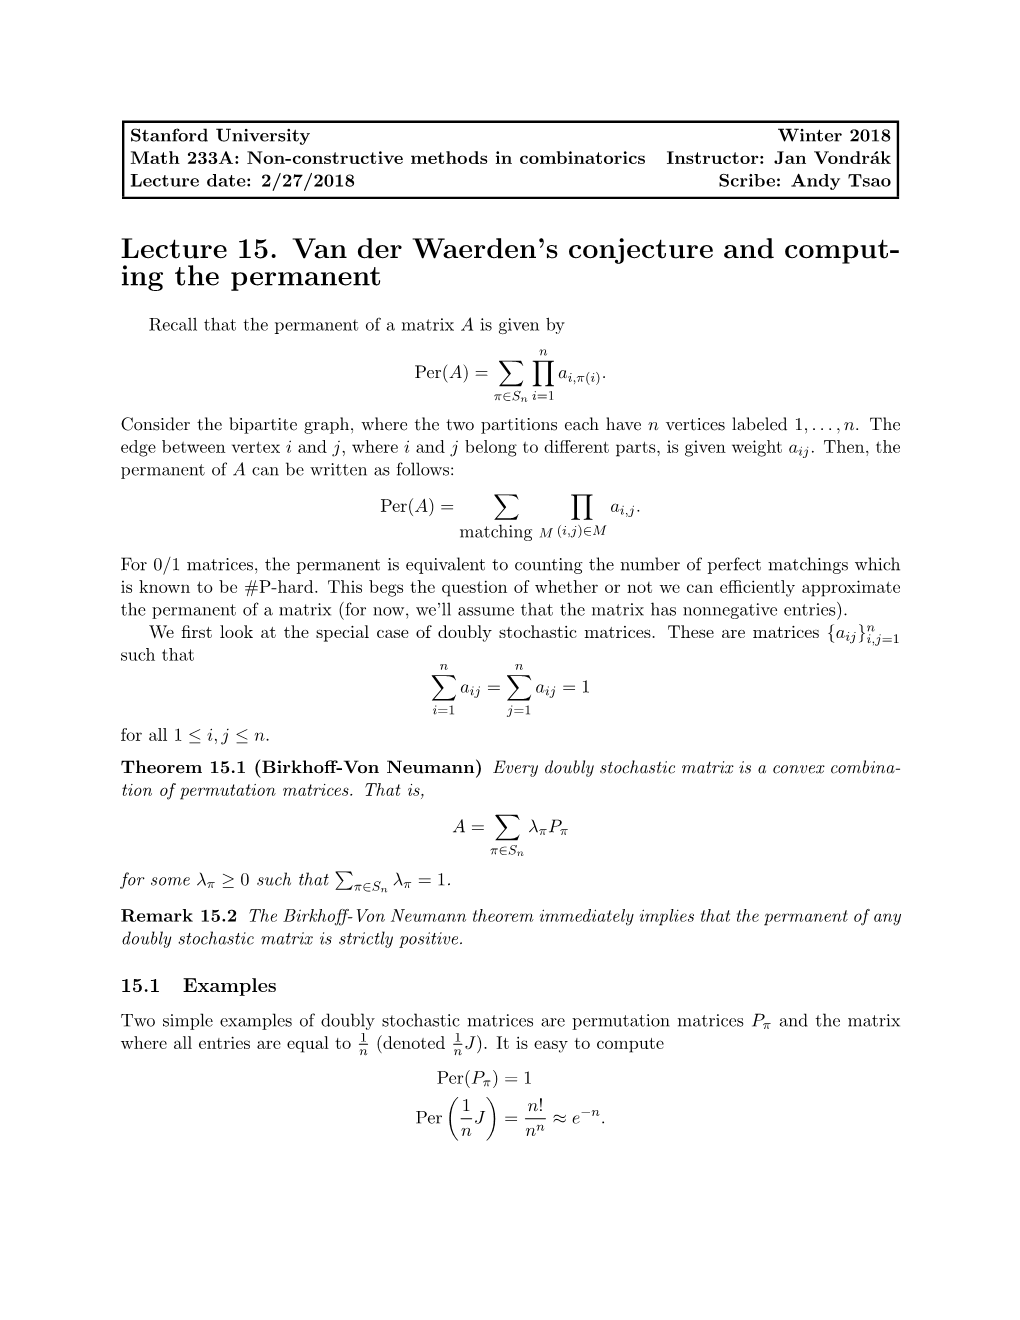 Lecture 15. Van Der Waerden's Conjecture and Comput